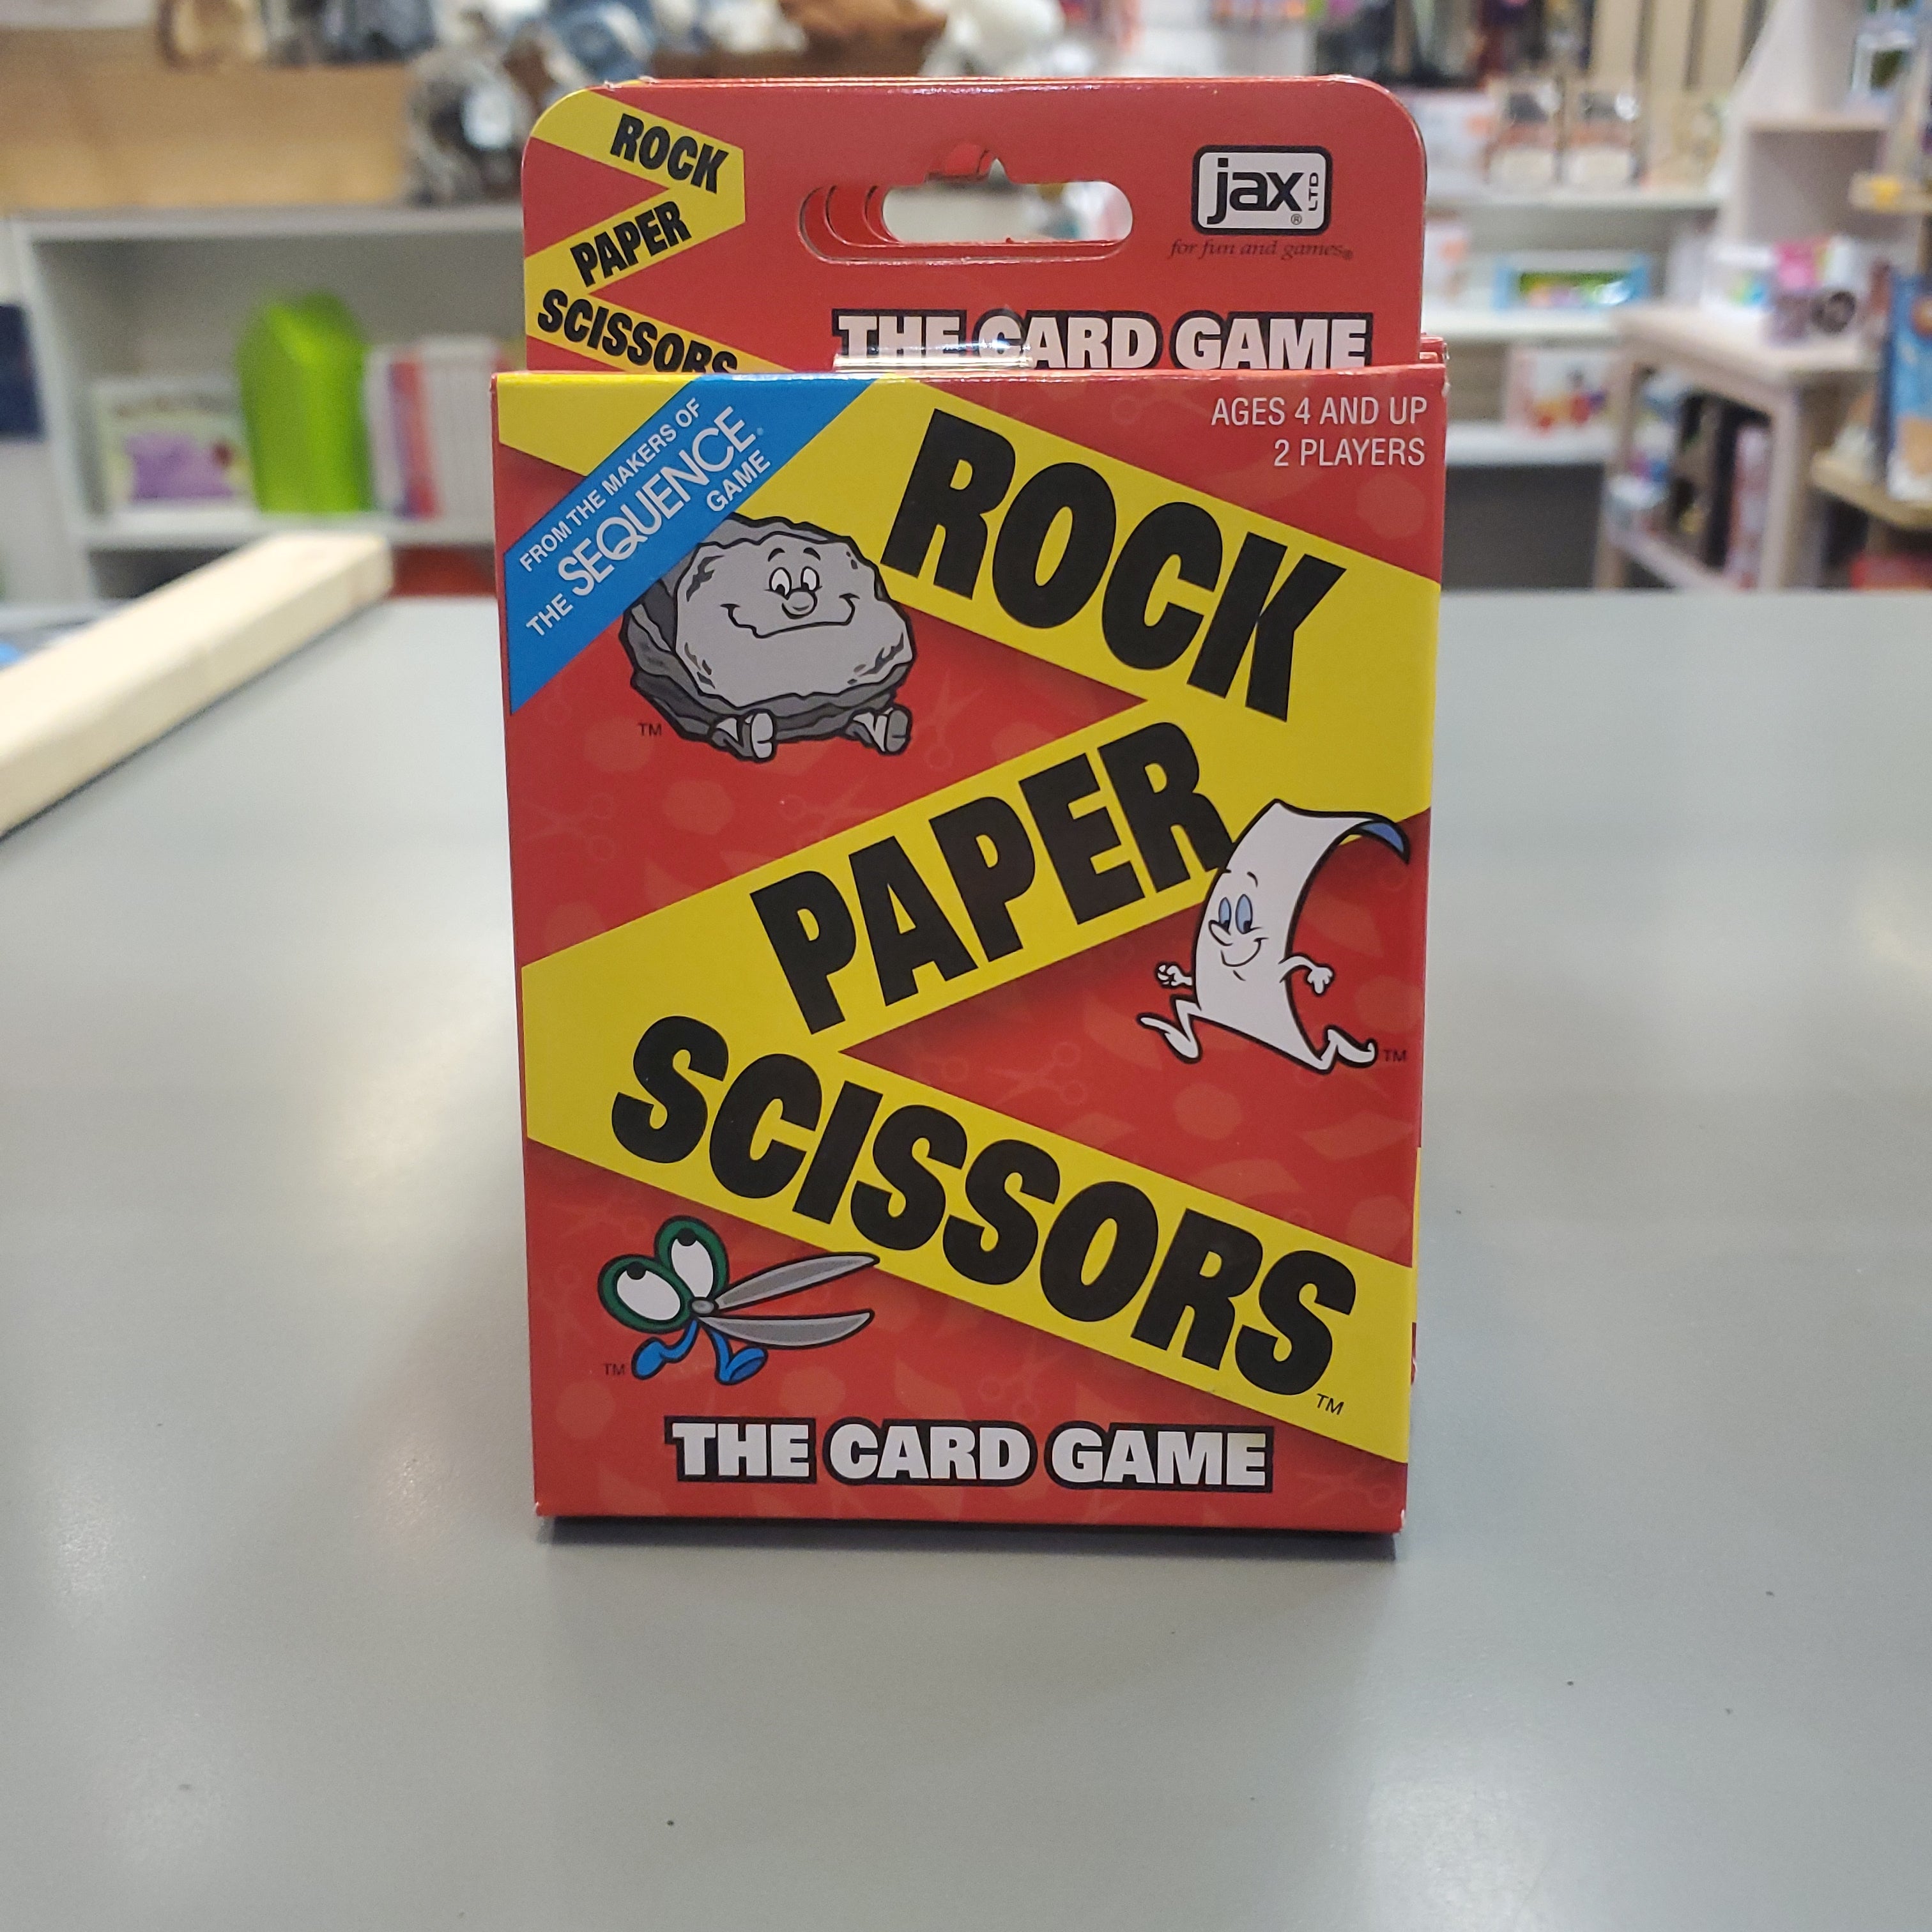 JAX Rock/Paper/Scissors Card Game